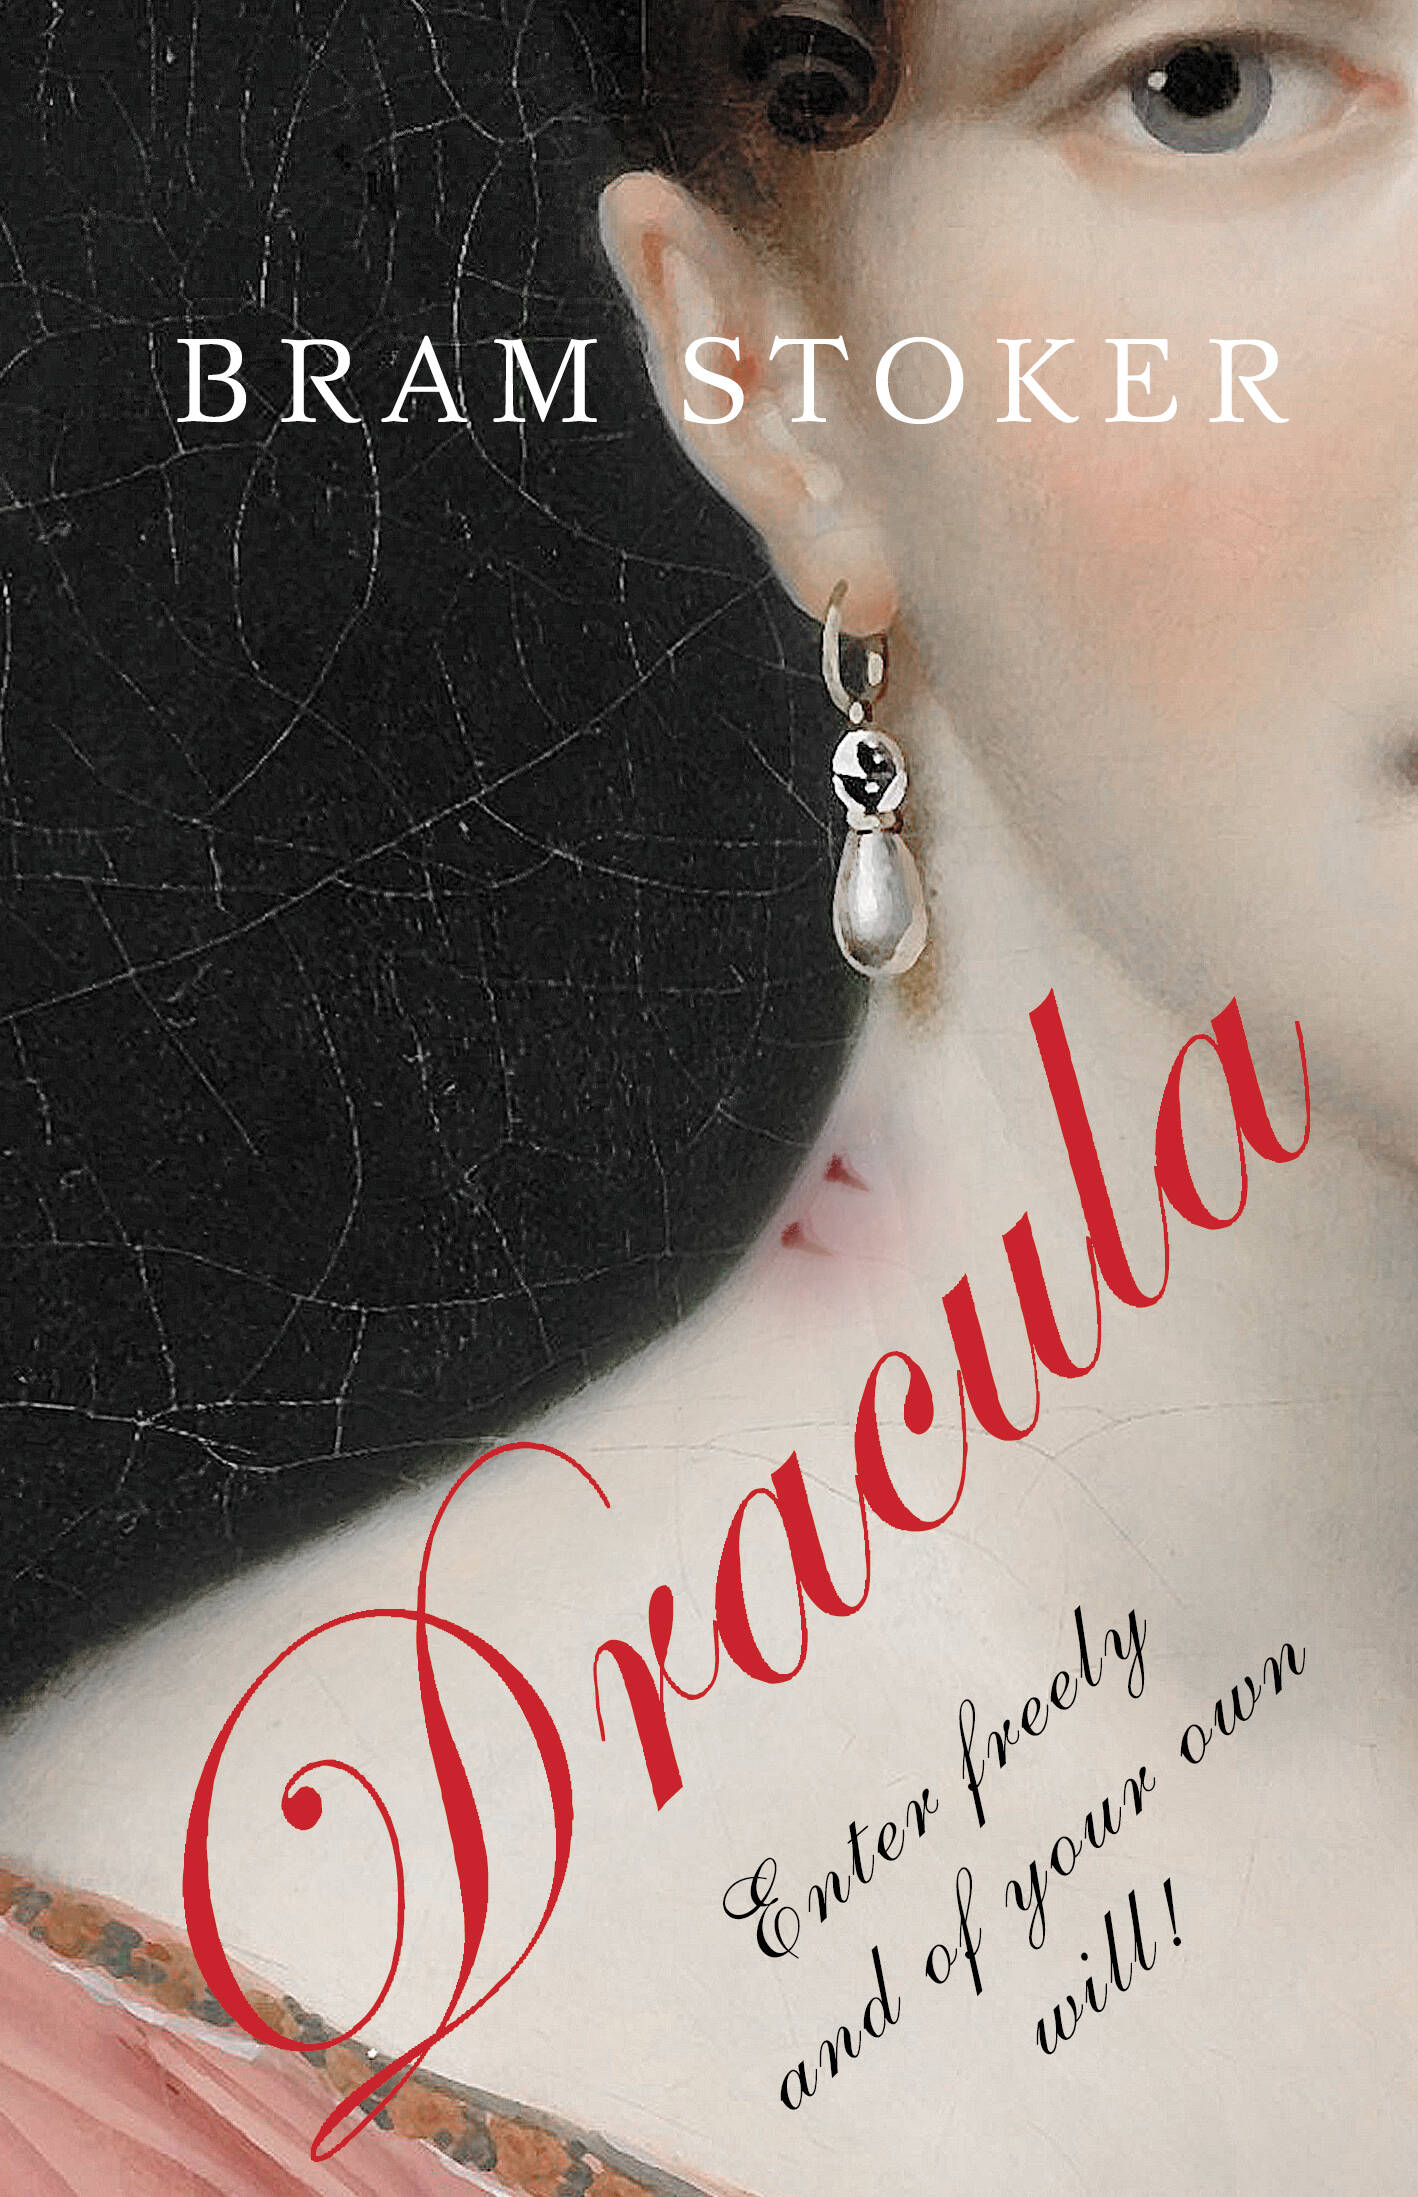 Dracula dracula